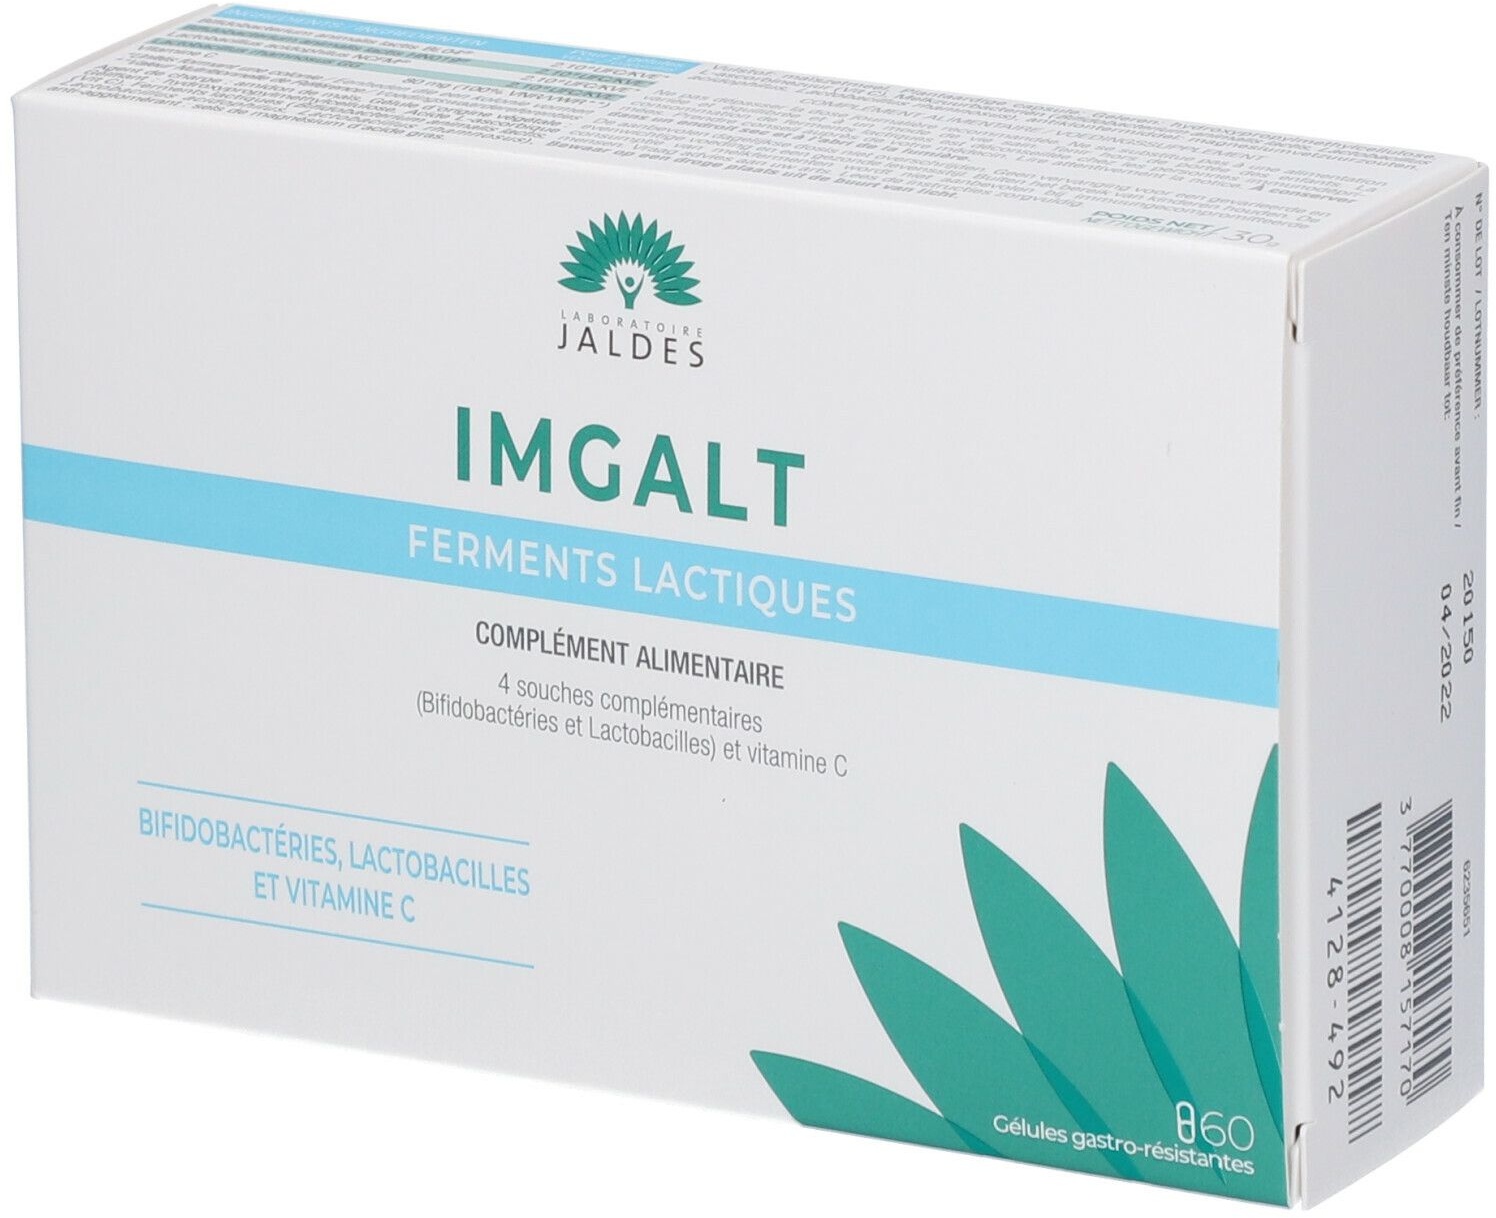 IMGALT Ferments lactiques 60 pc(s) capsule(s)